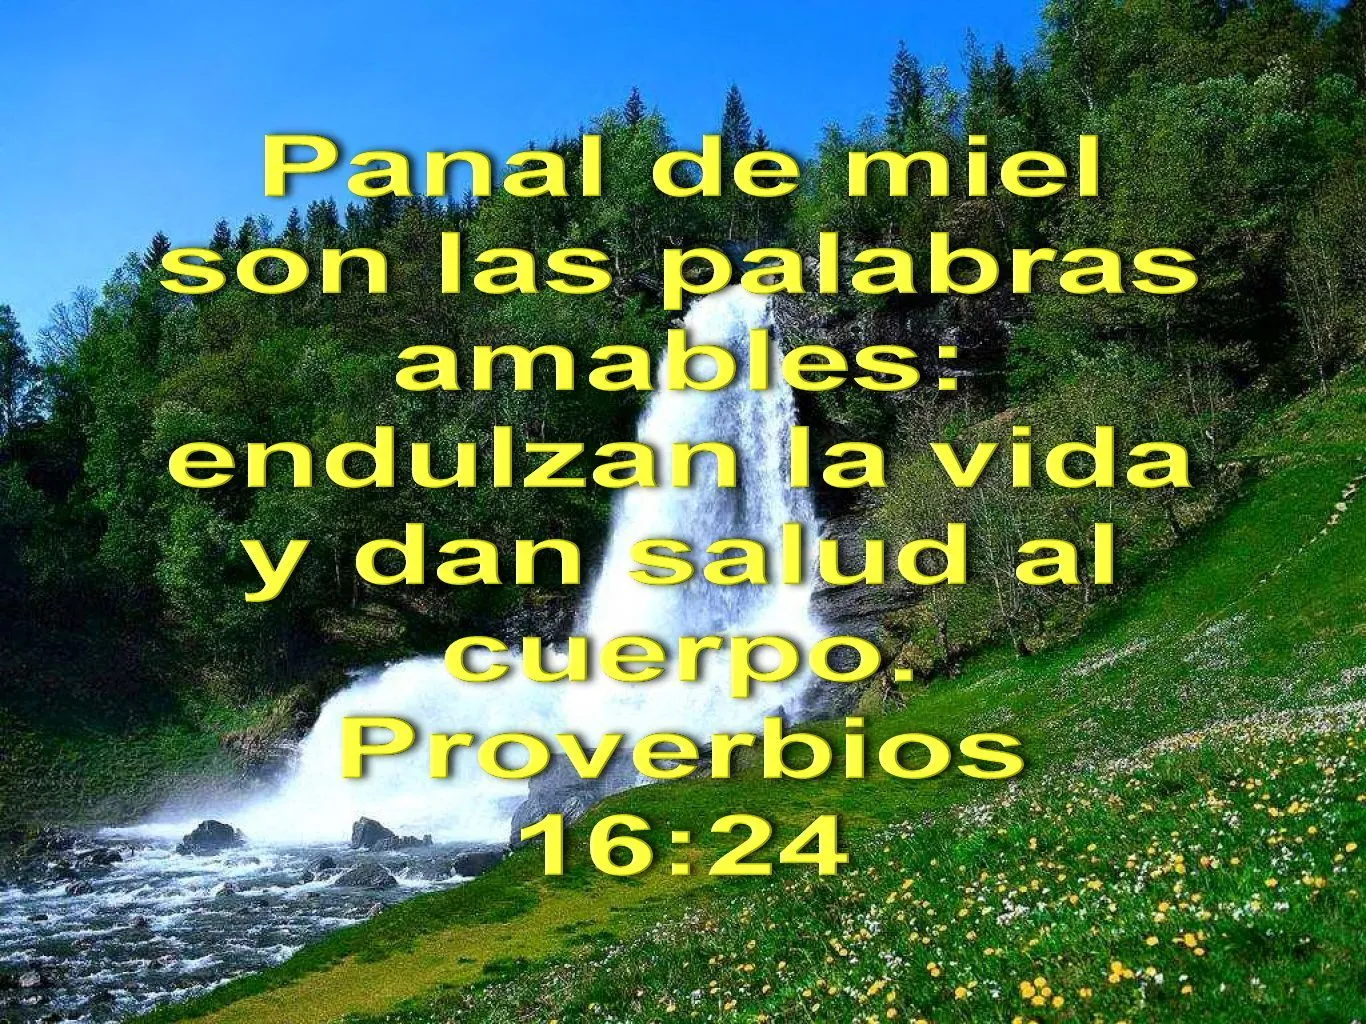 Biblia, paisajes y maravillas: Proverbios 16:24 | Biblia proverbios,  Proverbios, Frases biblicas de aliento